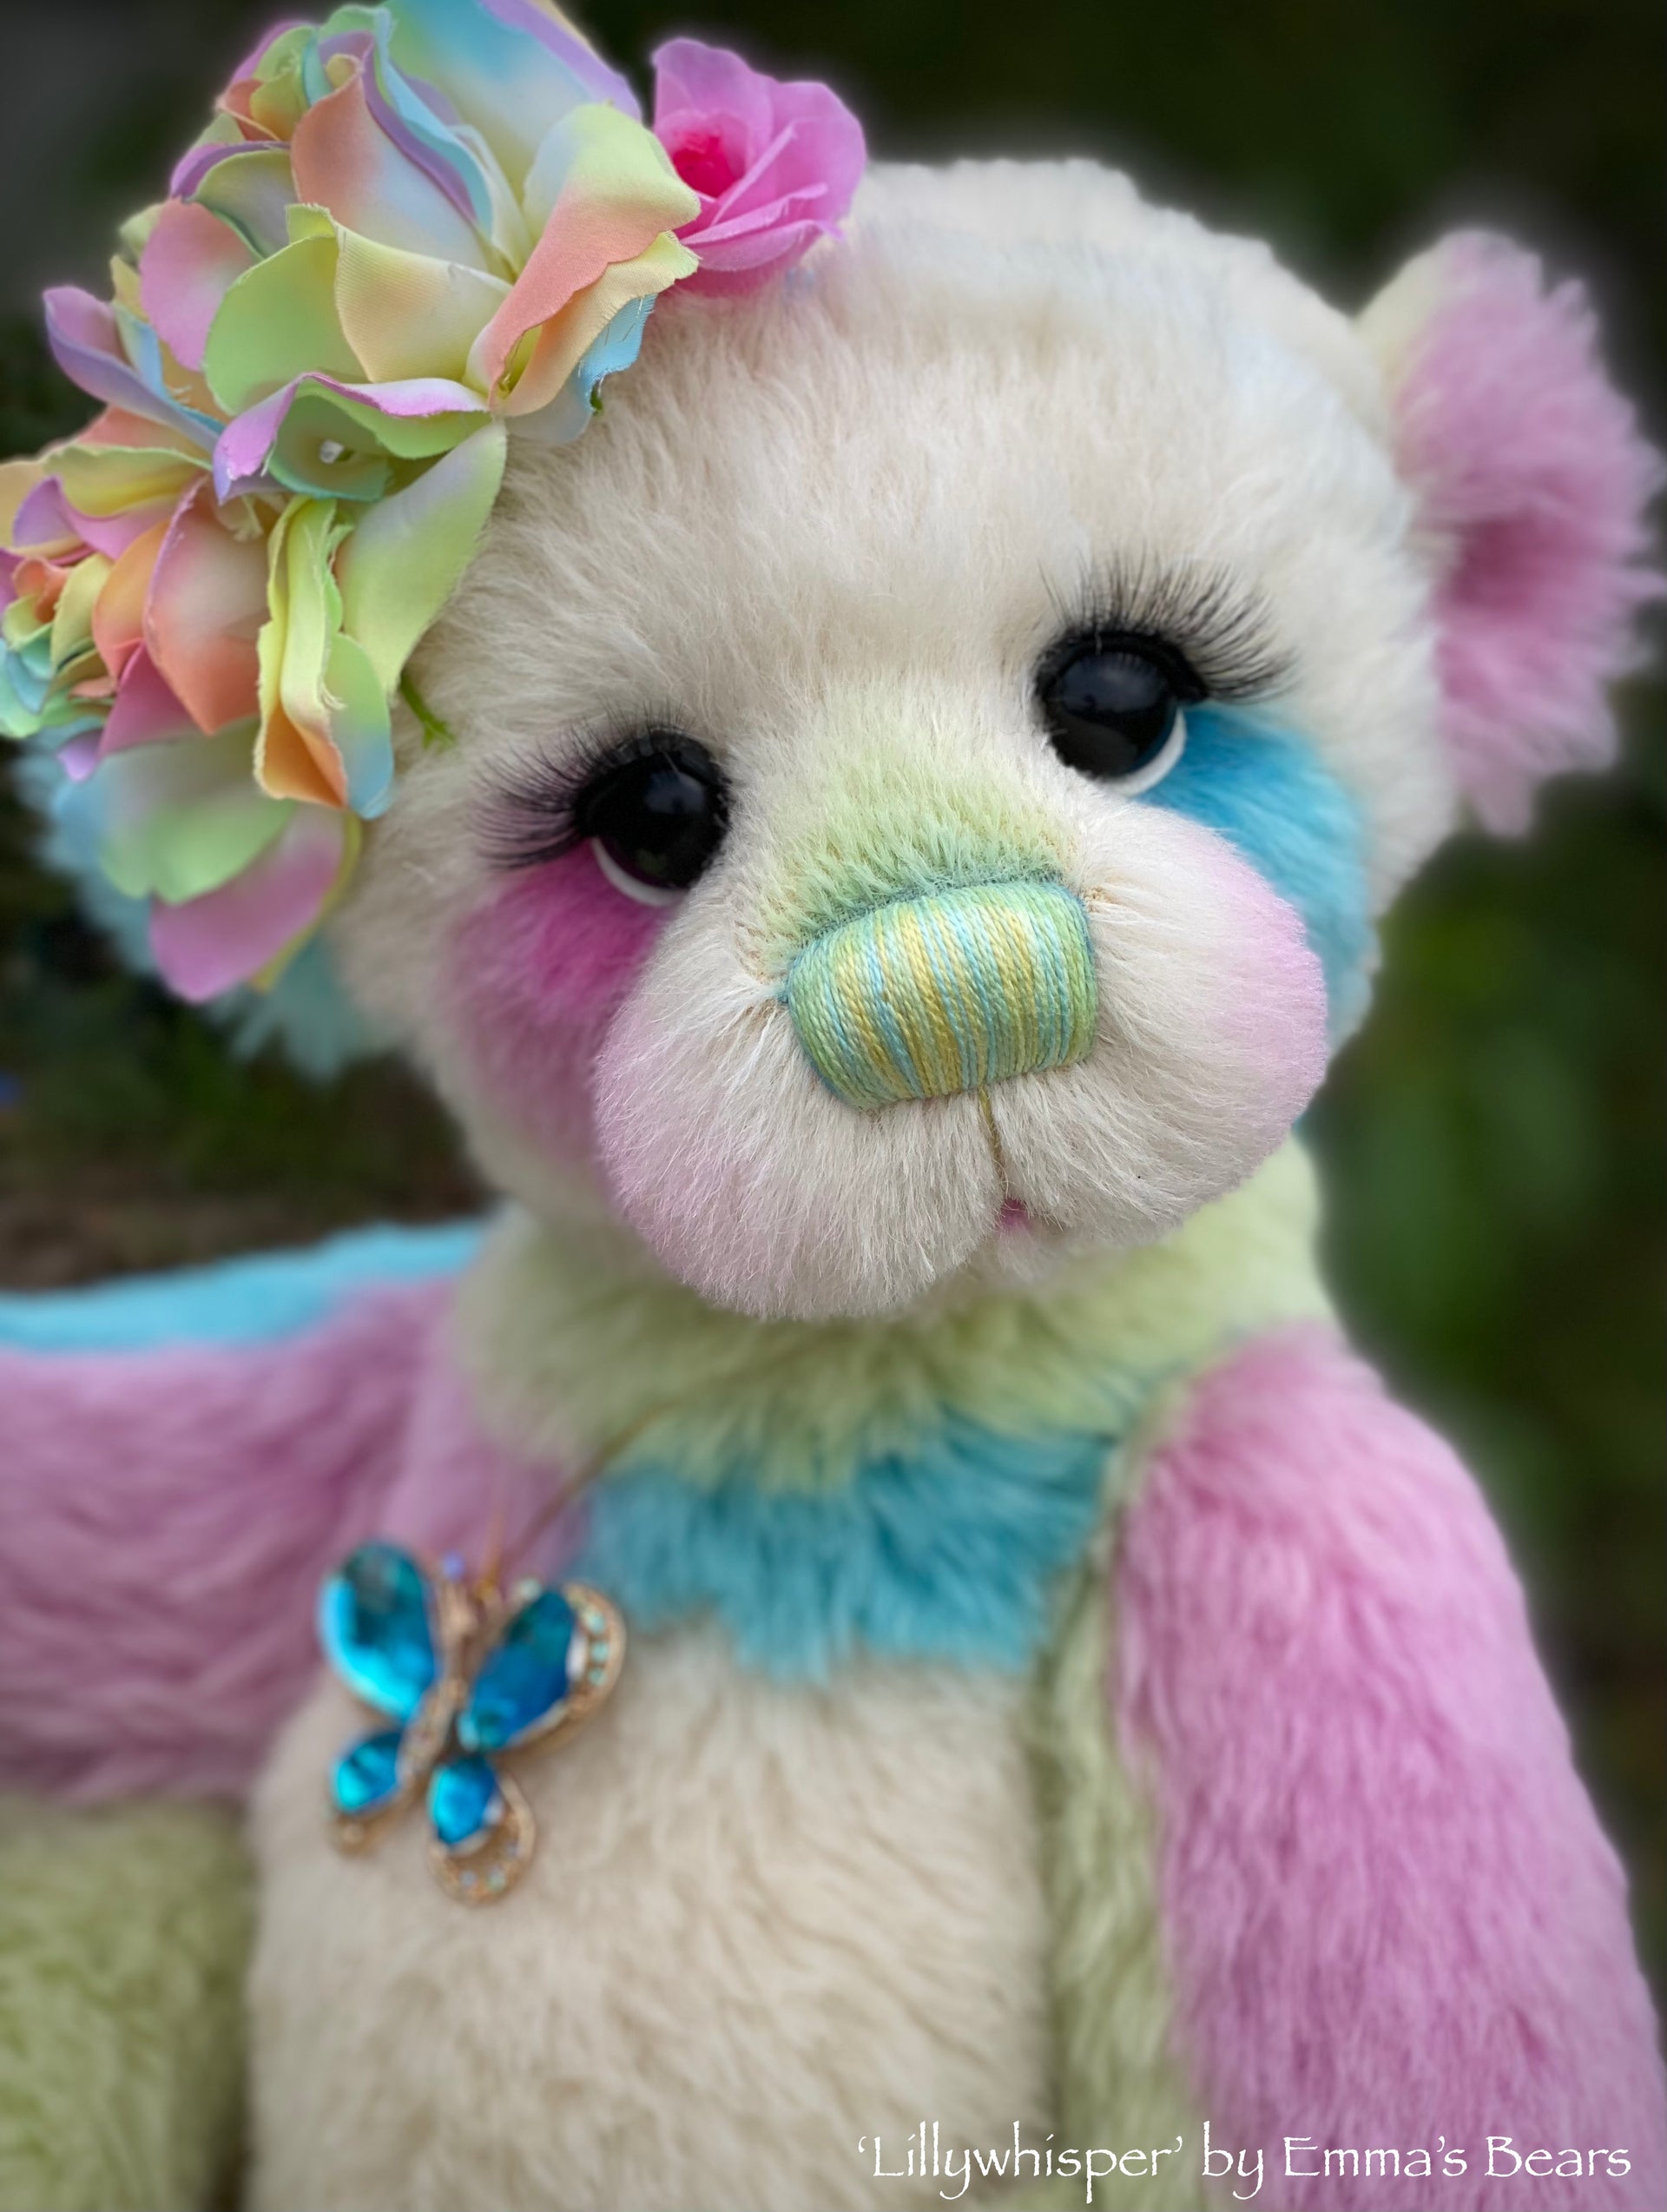 Lillywhisper - 21" Hand-dyed Alpaca Artist Bear by Emma's Bears - OOAK